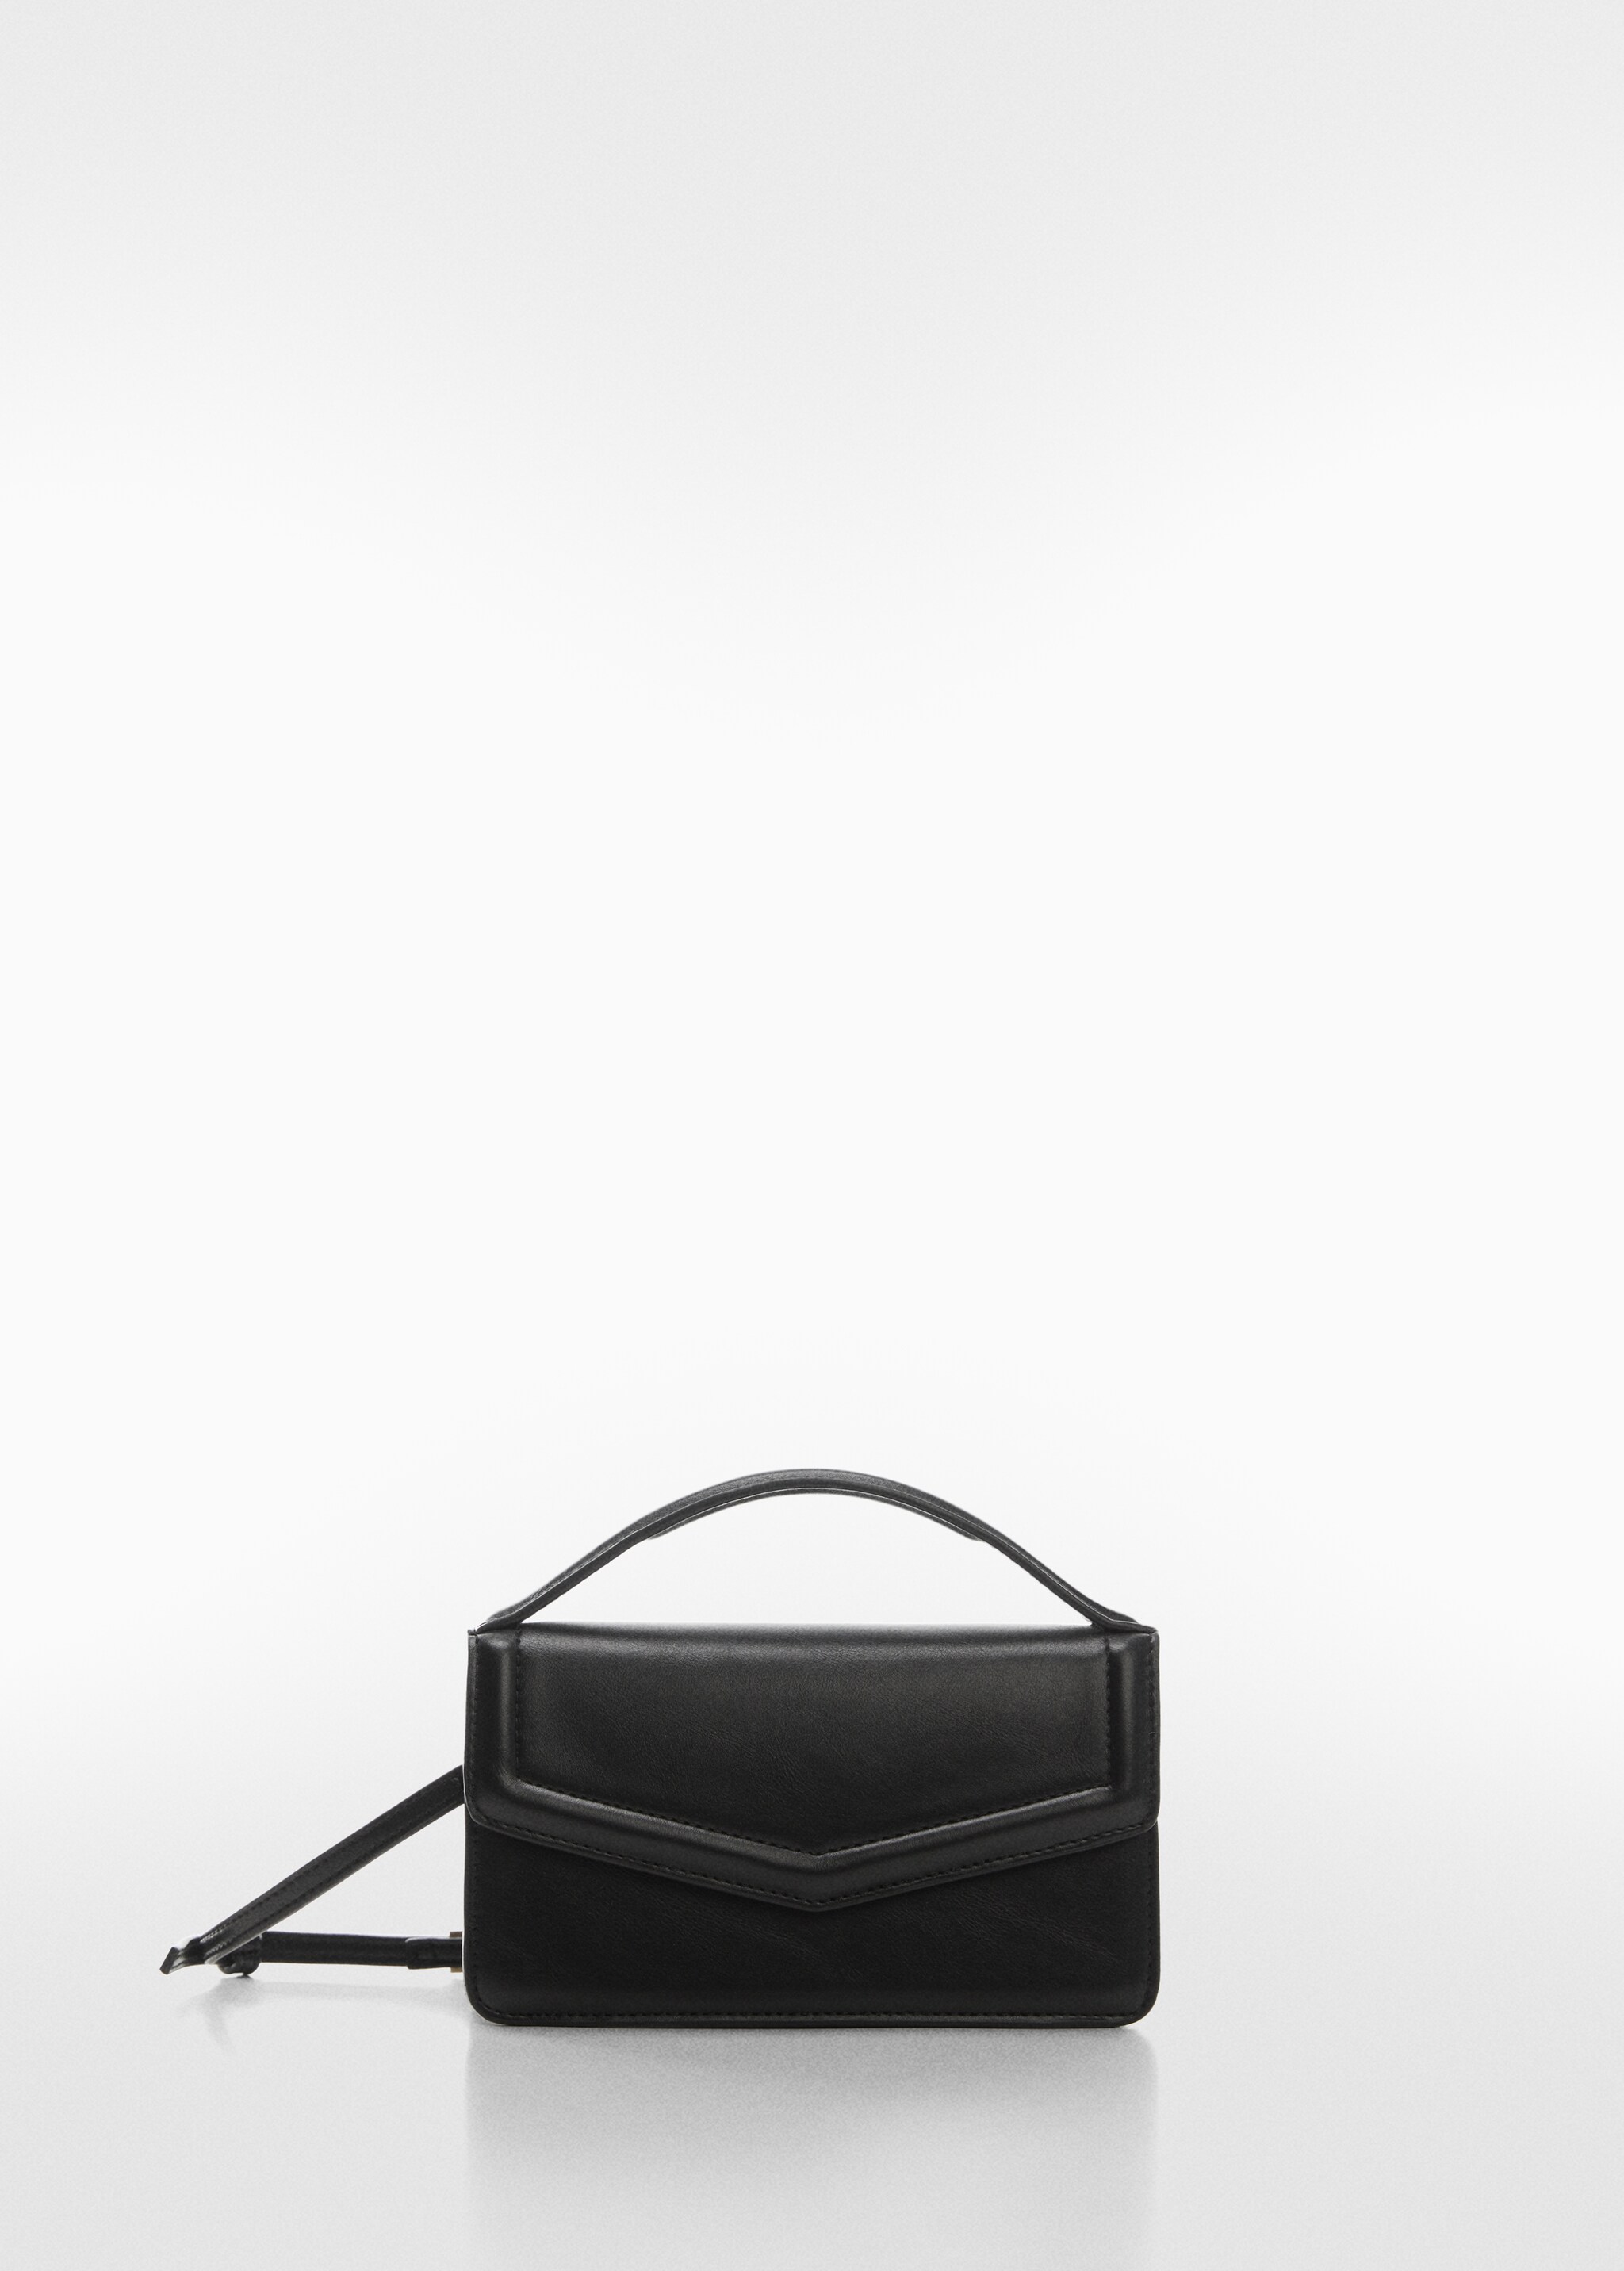 Τσάντα τετράγωνη καπάκι - Προϊόν χωρίς μοντέλο